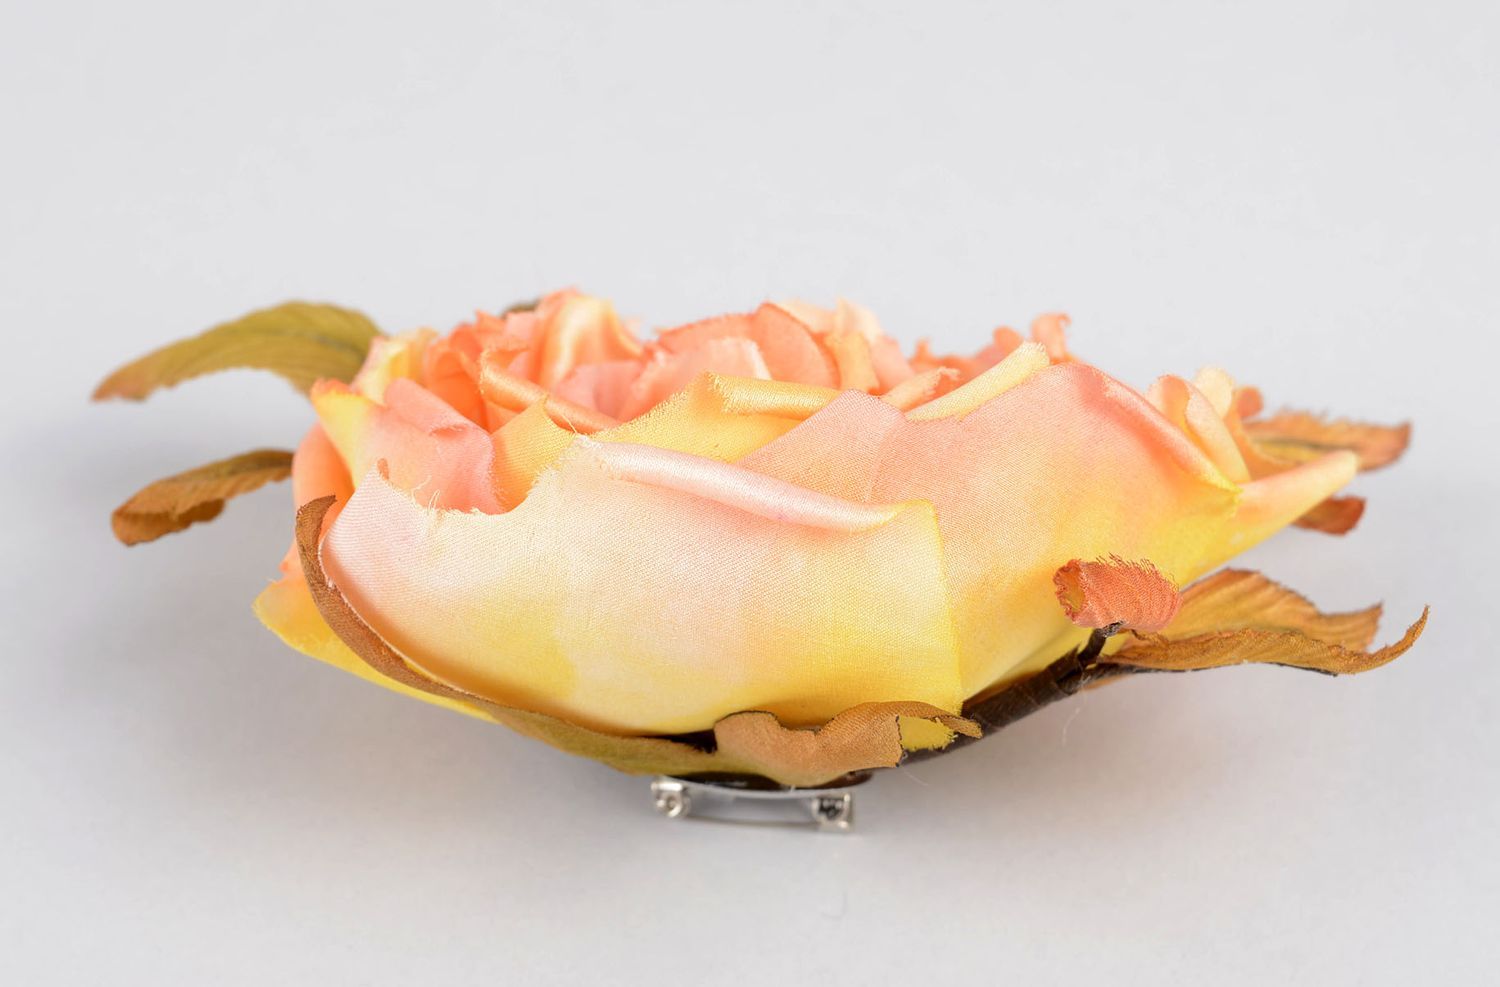 Брошь ручной работы персиковая брошь-цветок авторское дизайнерское украшение фото 3